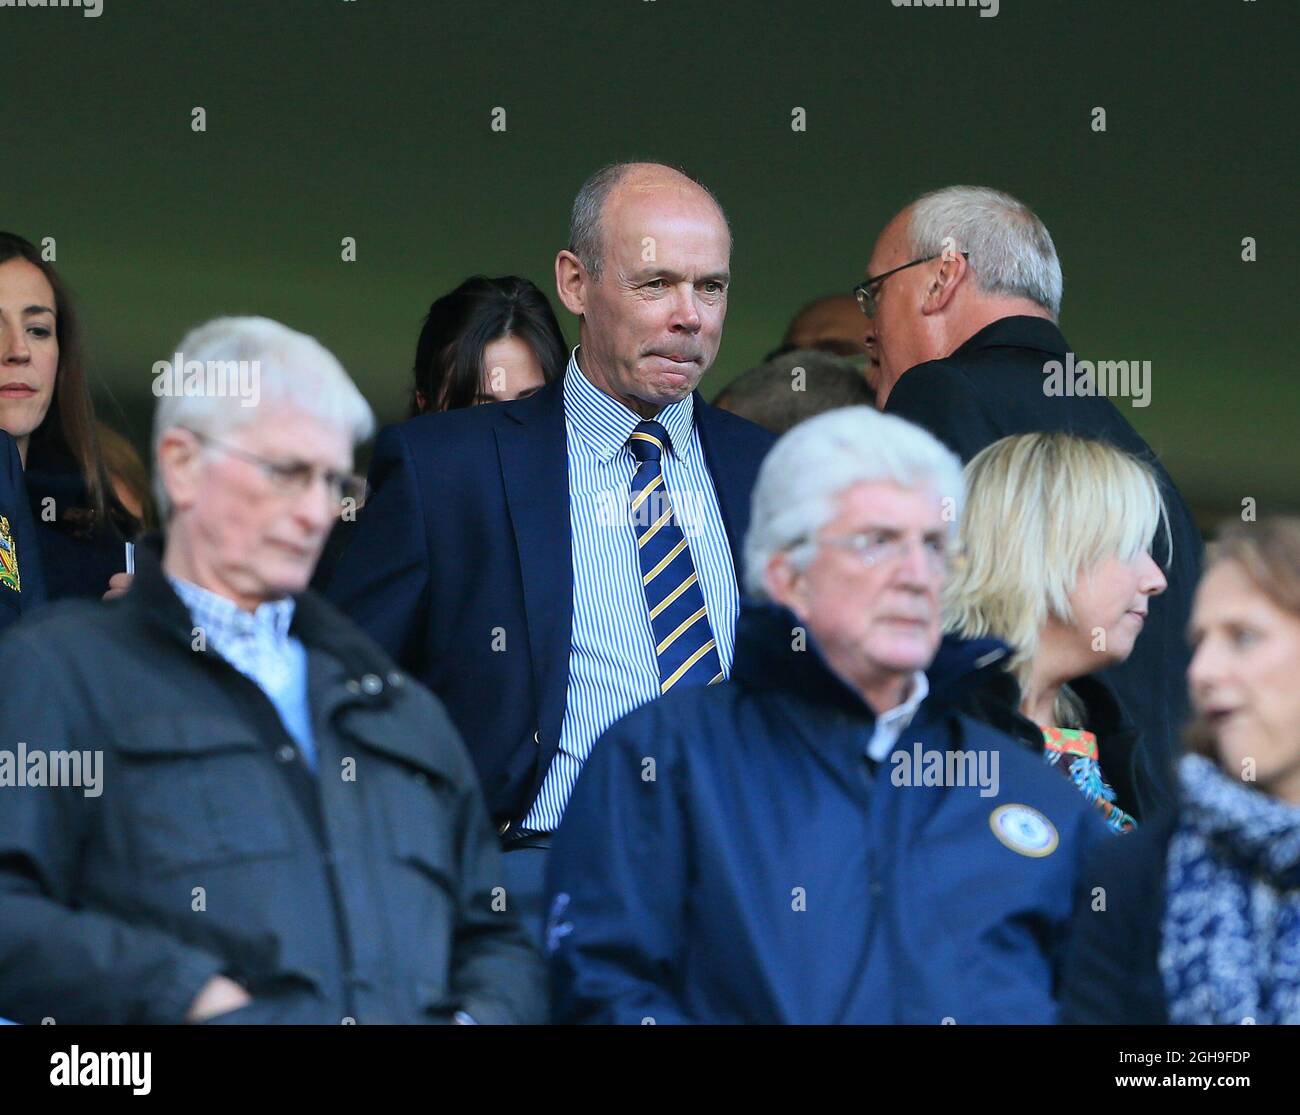 Sir Clive Woodward, ehemaliger Rugby-Manager aus England, beobachtet das Spiel der Barclays Premier League zwischen Chelsea und Manchester United am 18. April 2015 in der Stamford Bridge, London. Bild David KleinSportimage. Stockfoto